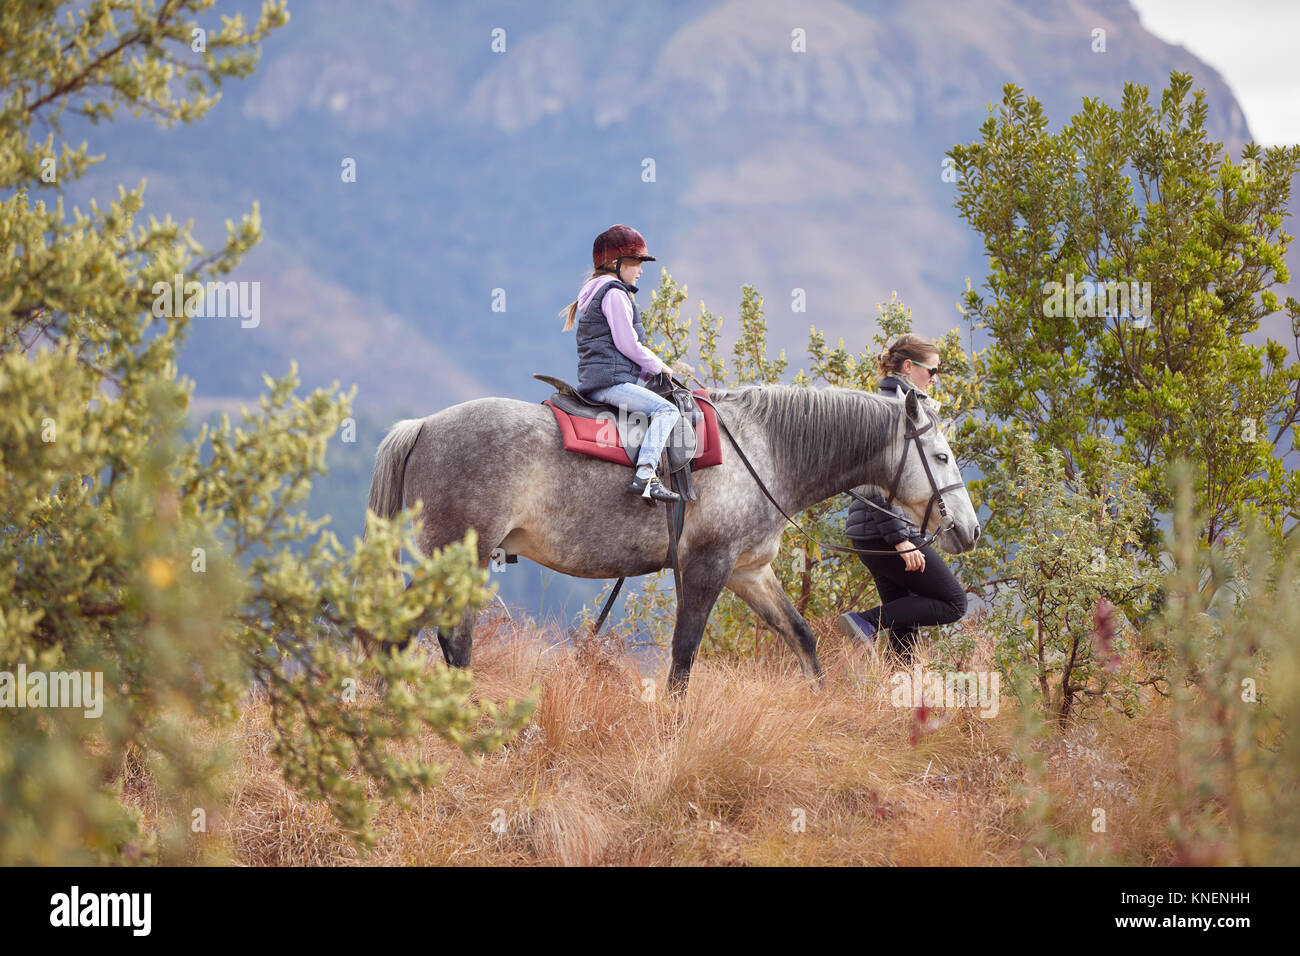 Ragazza di equitazione in ambiente rurale, madre camminare al loro fianco Foto Stock